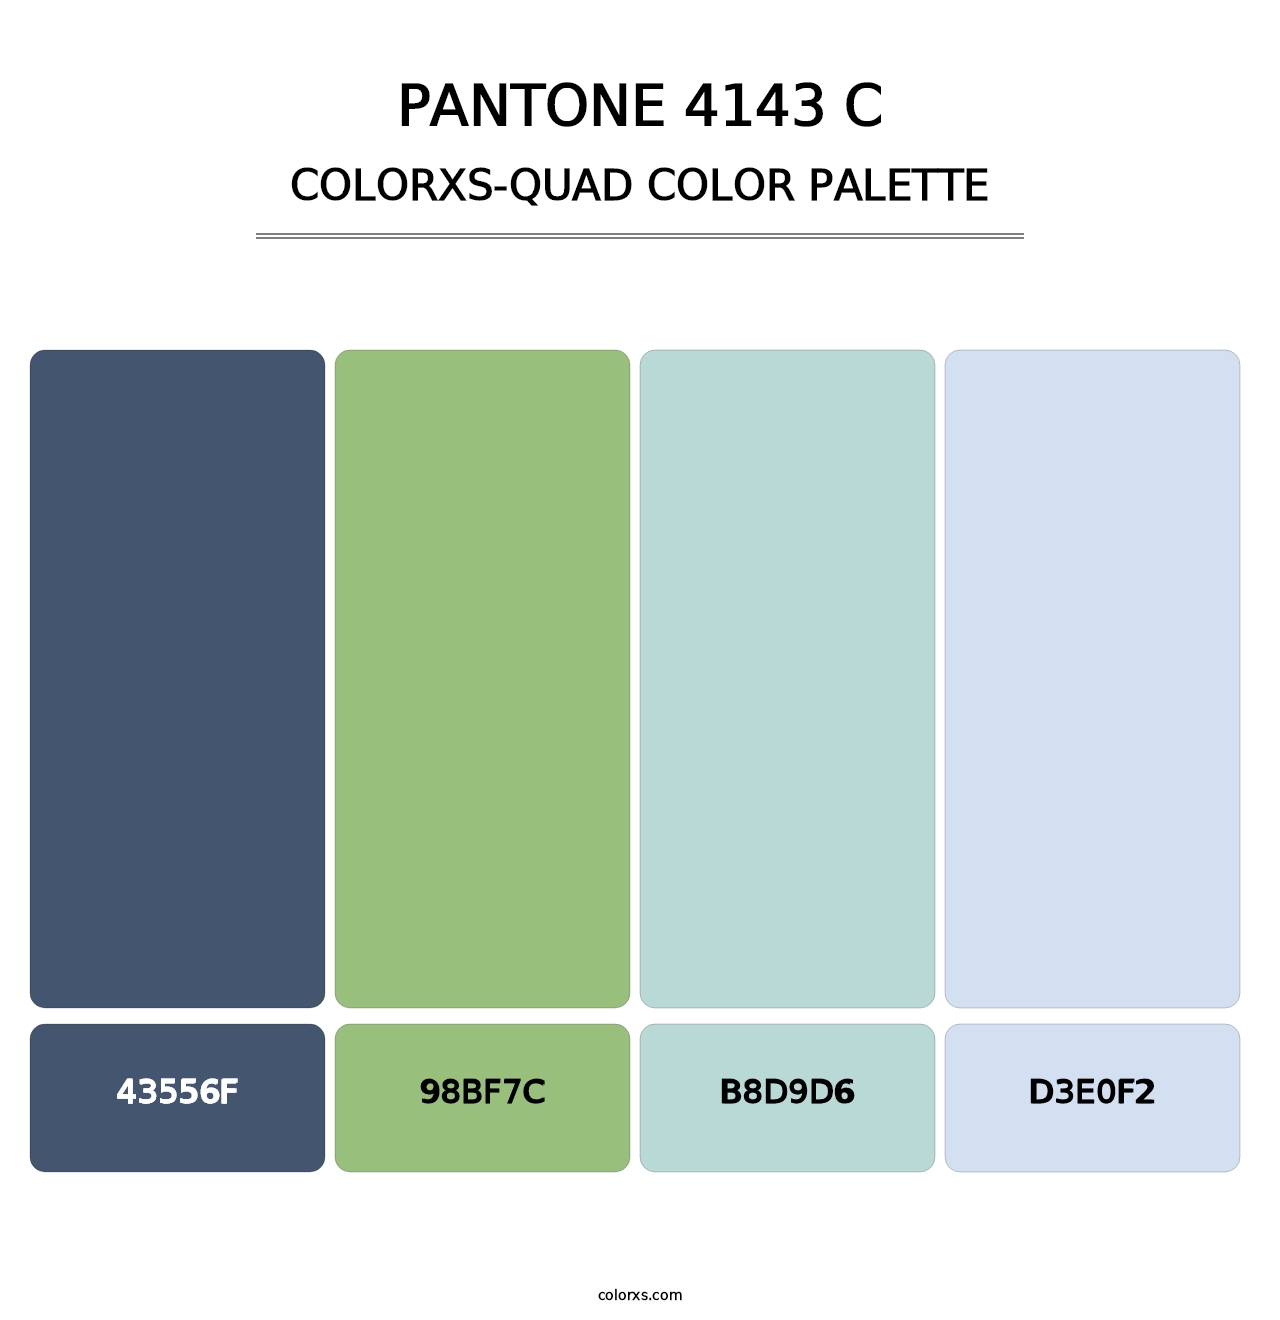 PANTONE 4143 C - Colorxs Quad Palette